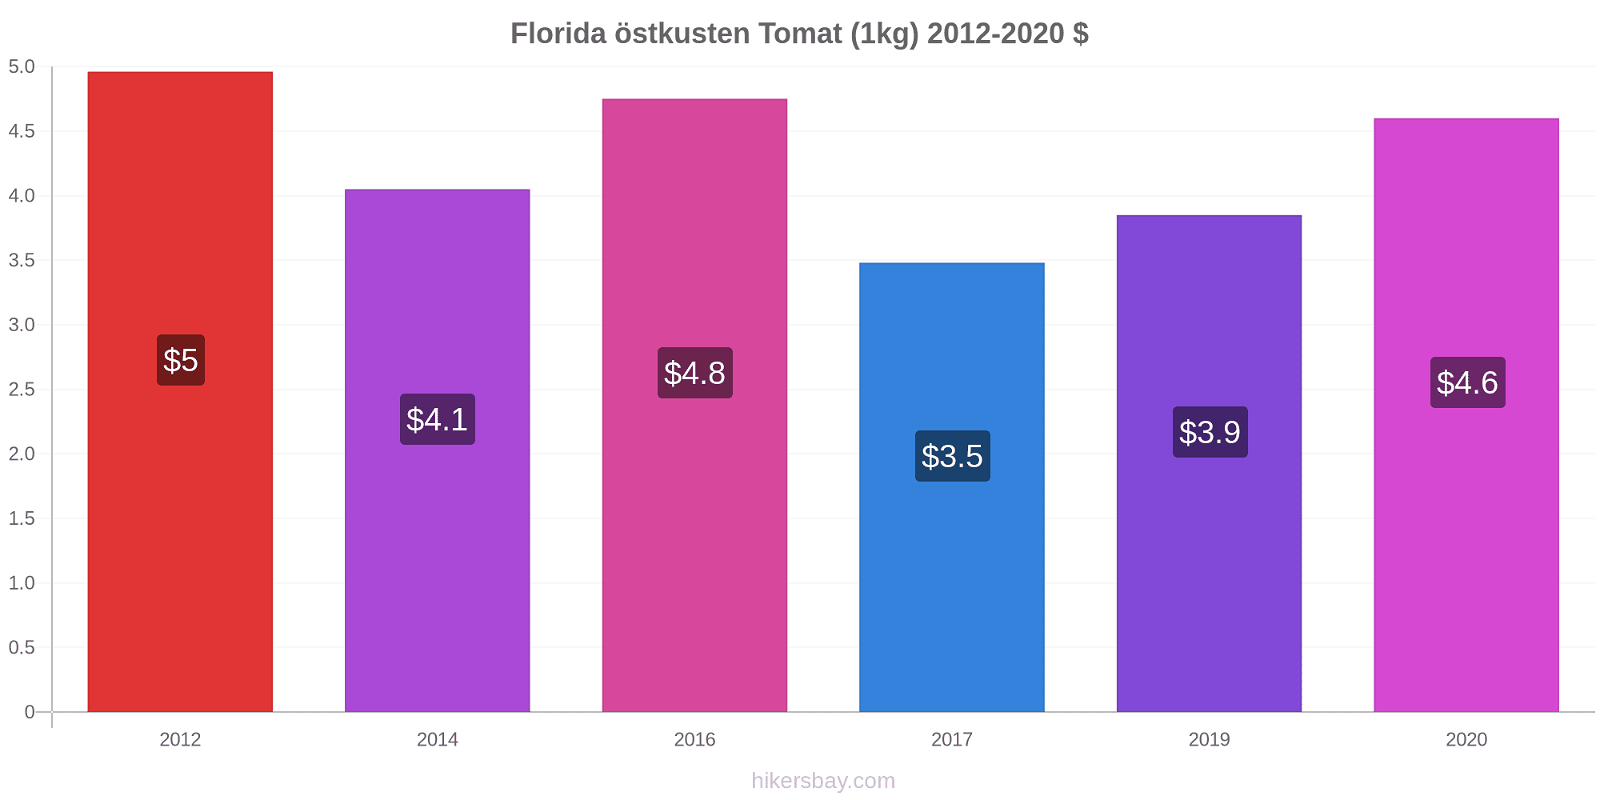 Florida östkusten prisförändringar Tomat (1kg) hikersbay.com